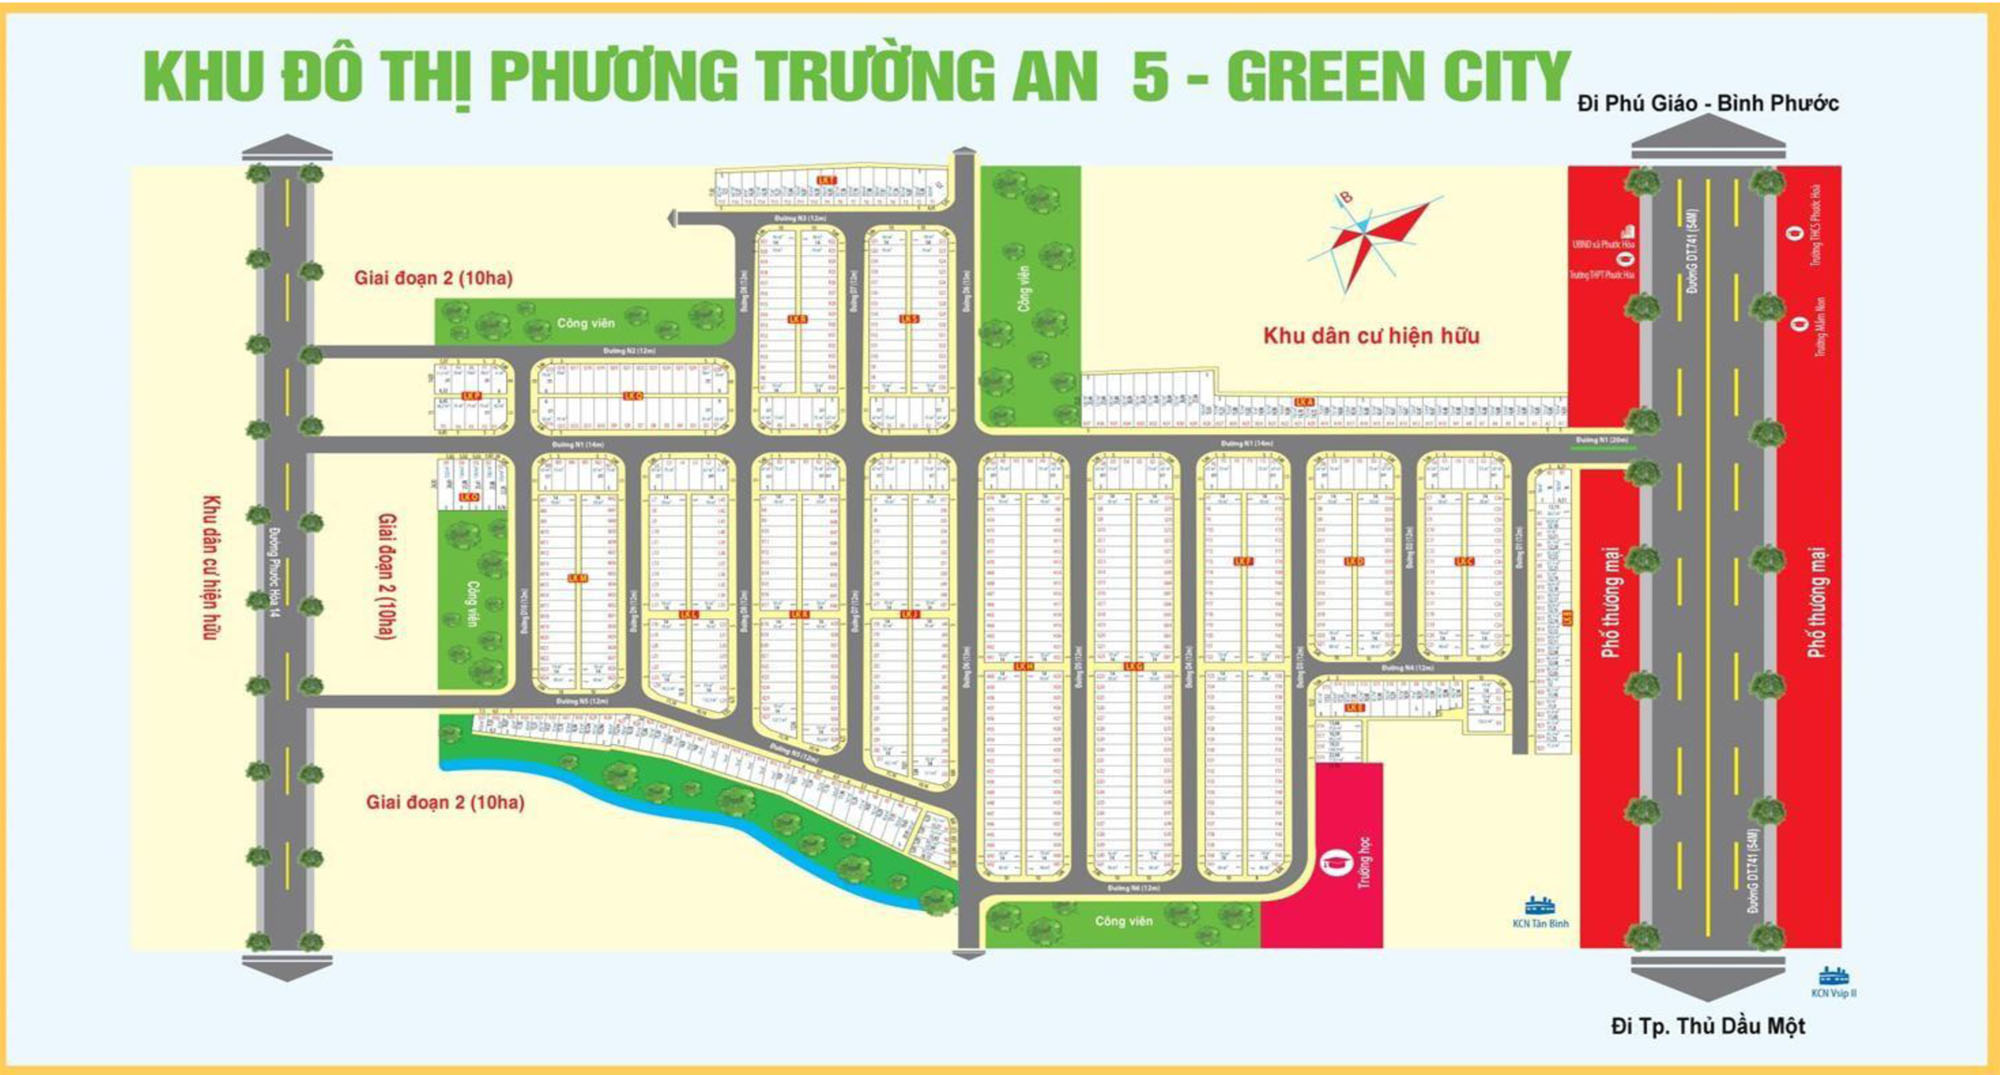 Mặt bằng phân lô dự án Phương trường an 5 - Green city Phú Giáo